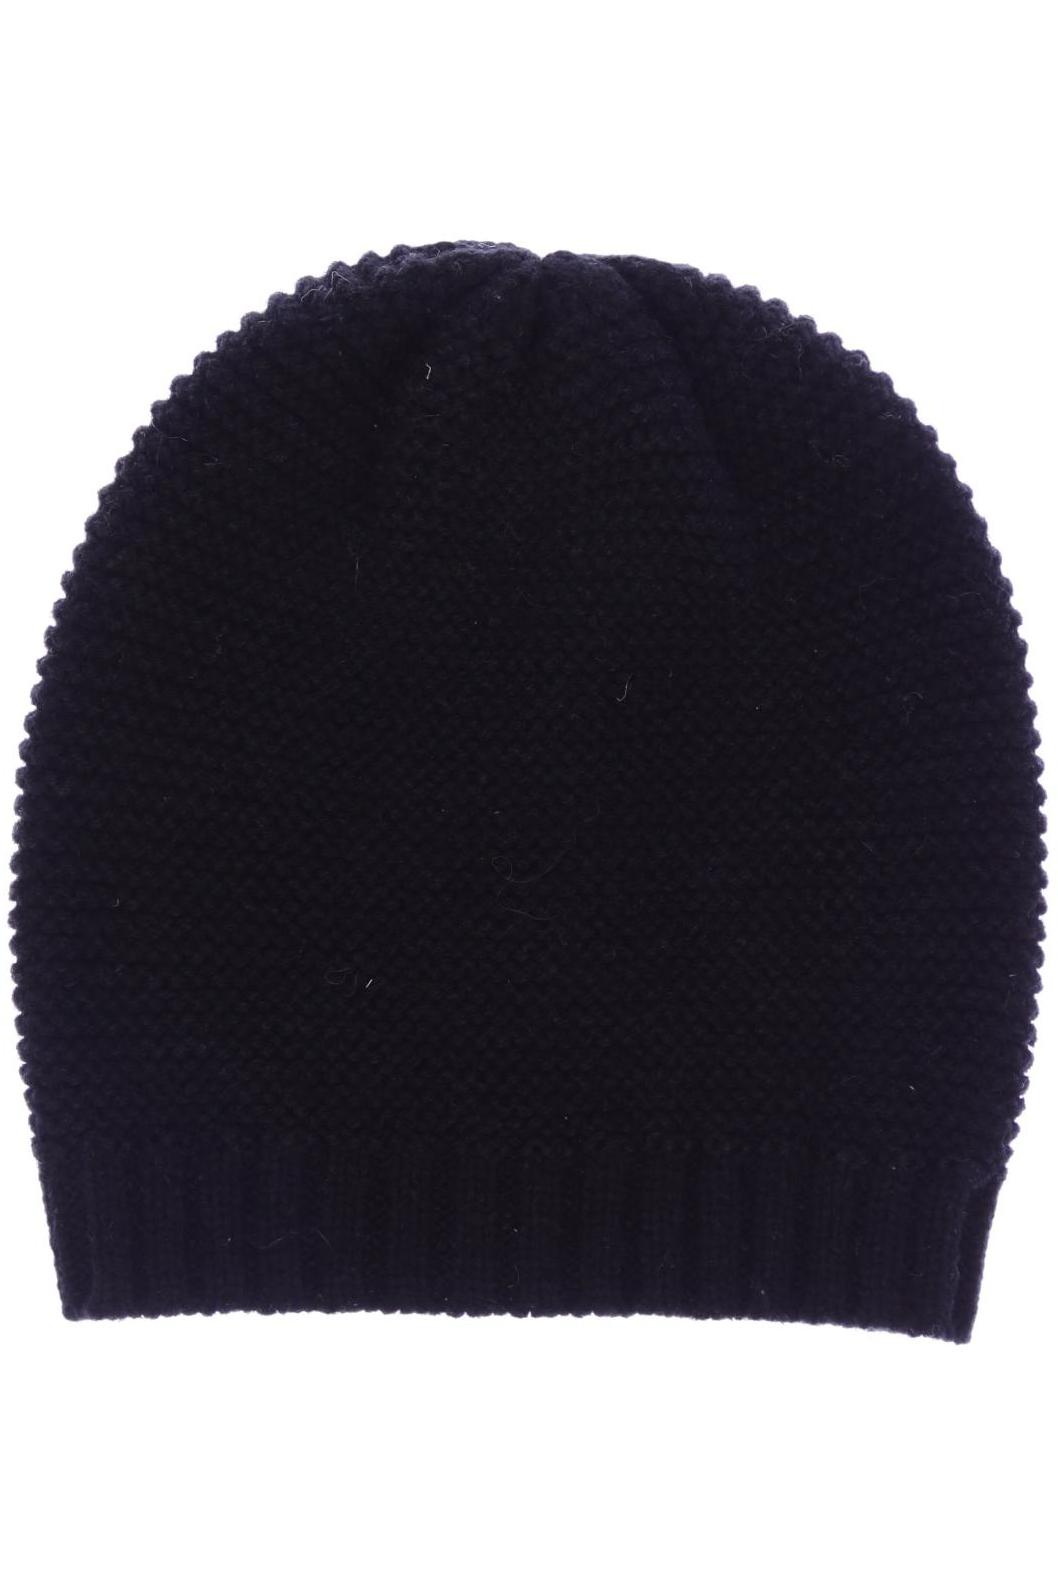 Stefanel Damen Hut/Mütze, schwarz von Stefanel